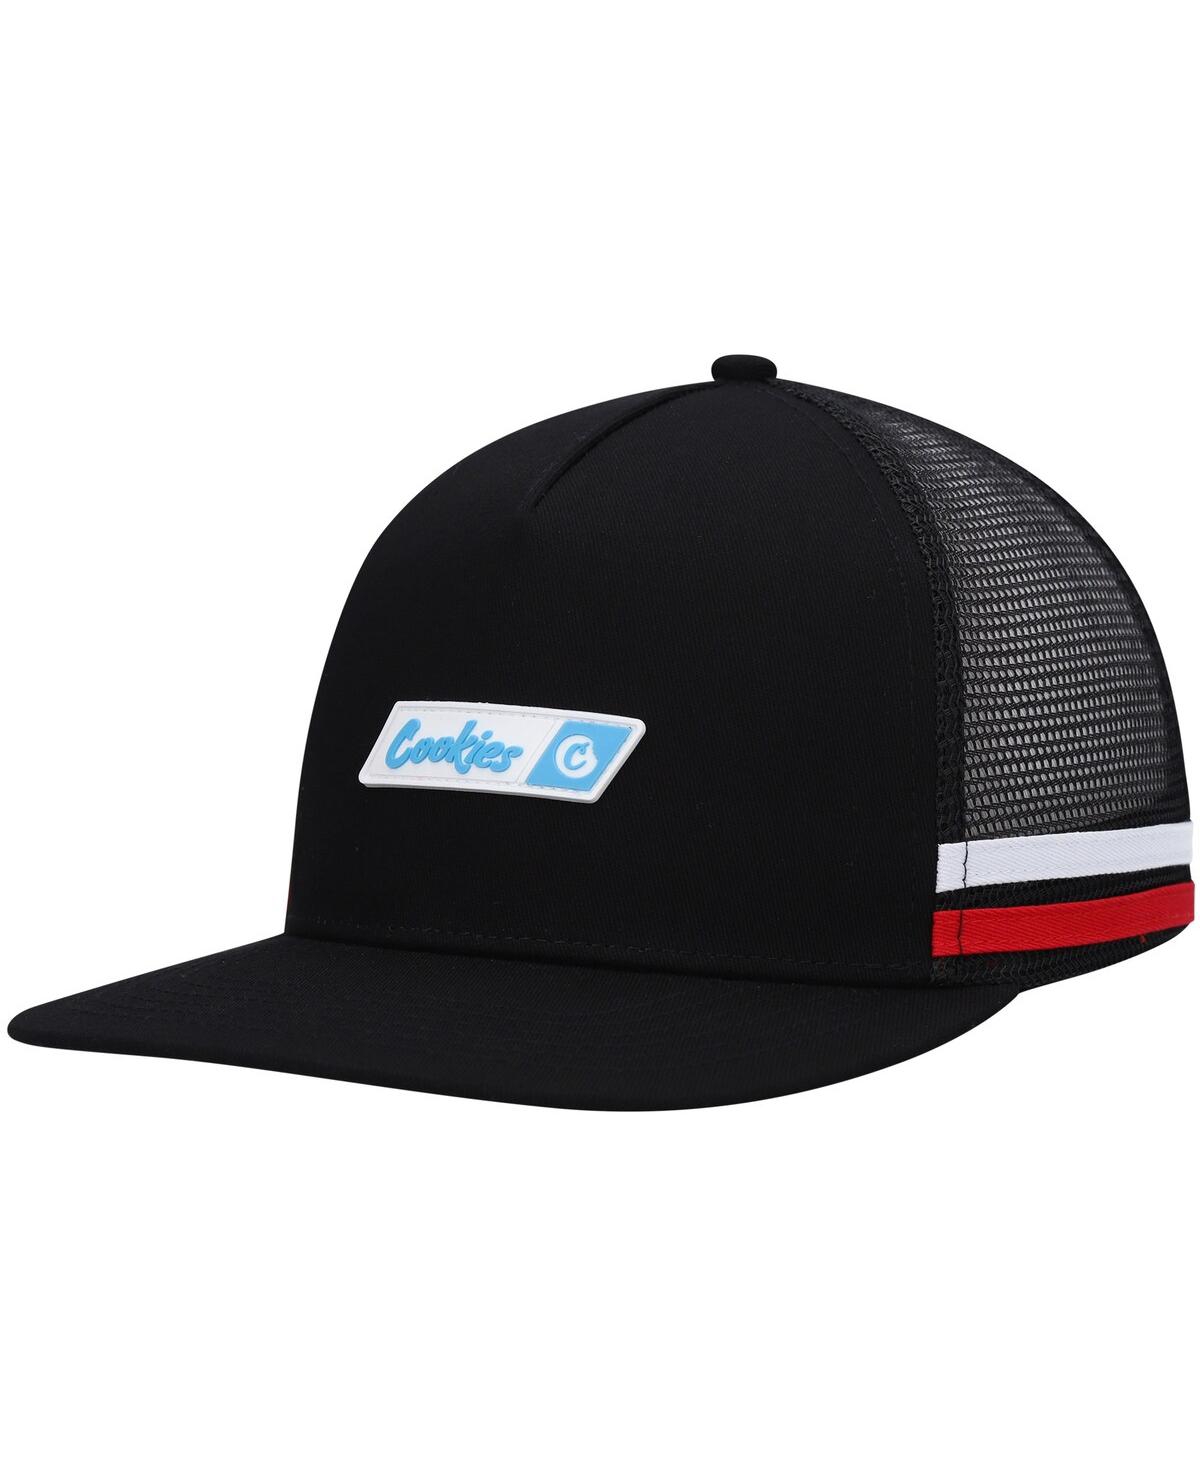 Shop Cookies Men's  Black Bal Harbor Trucker Snapback Hat